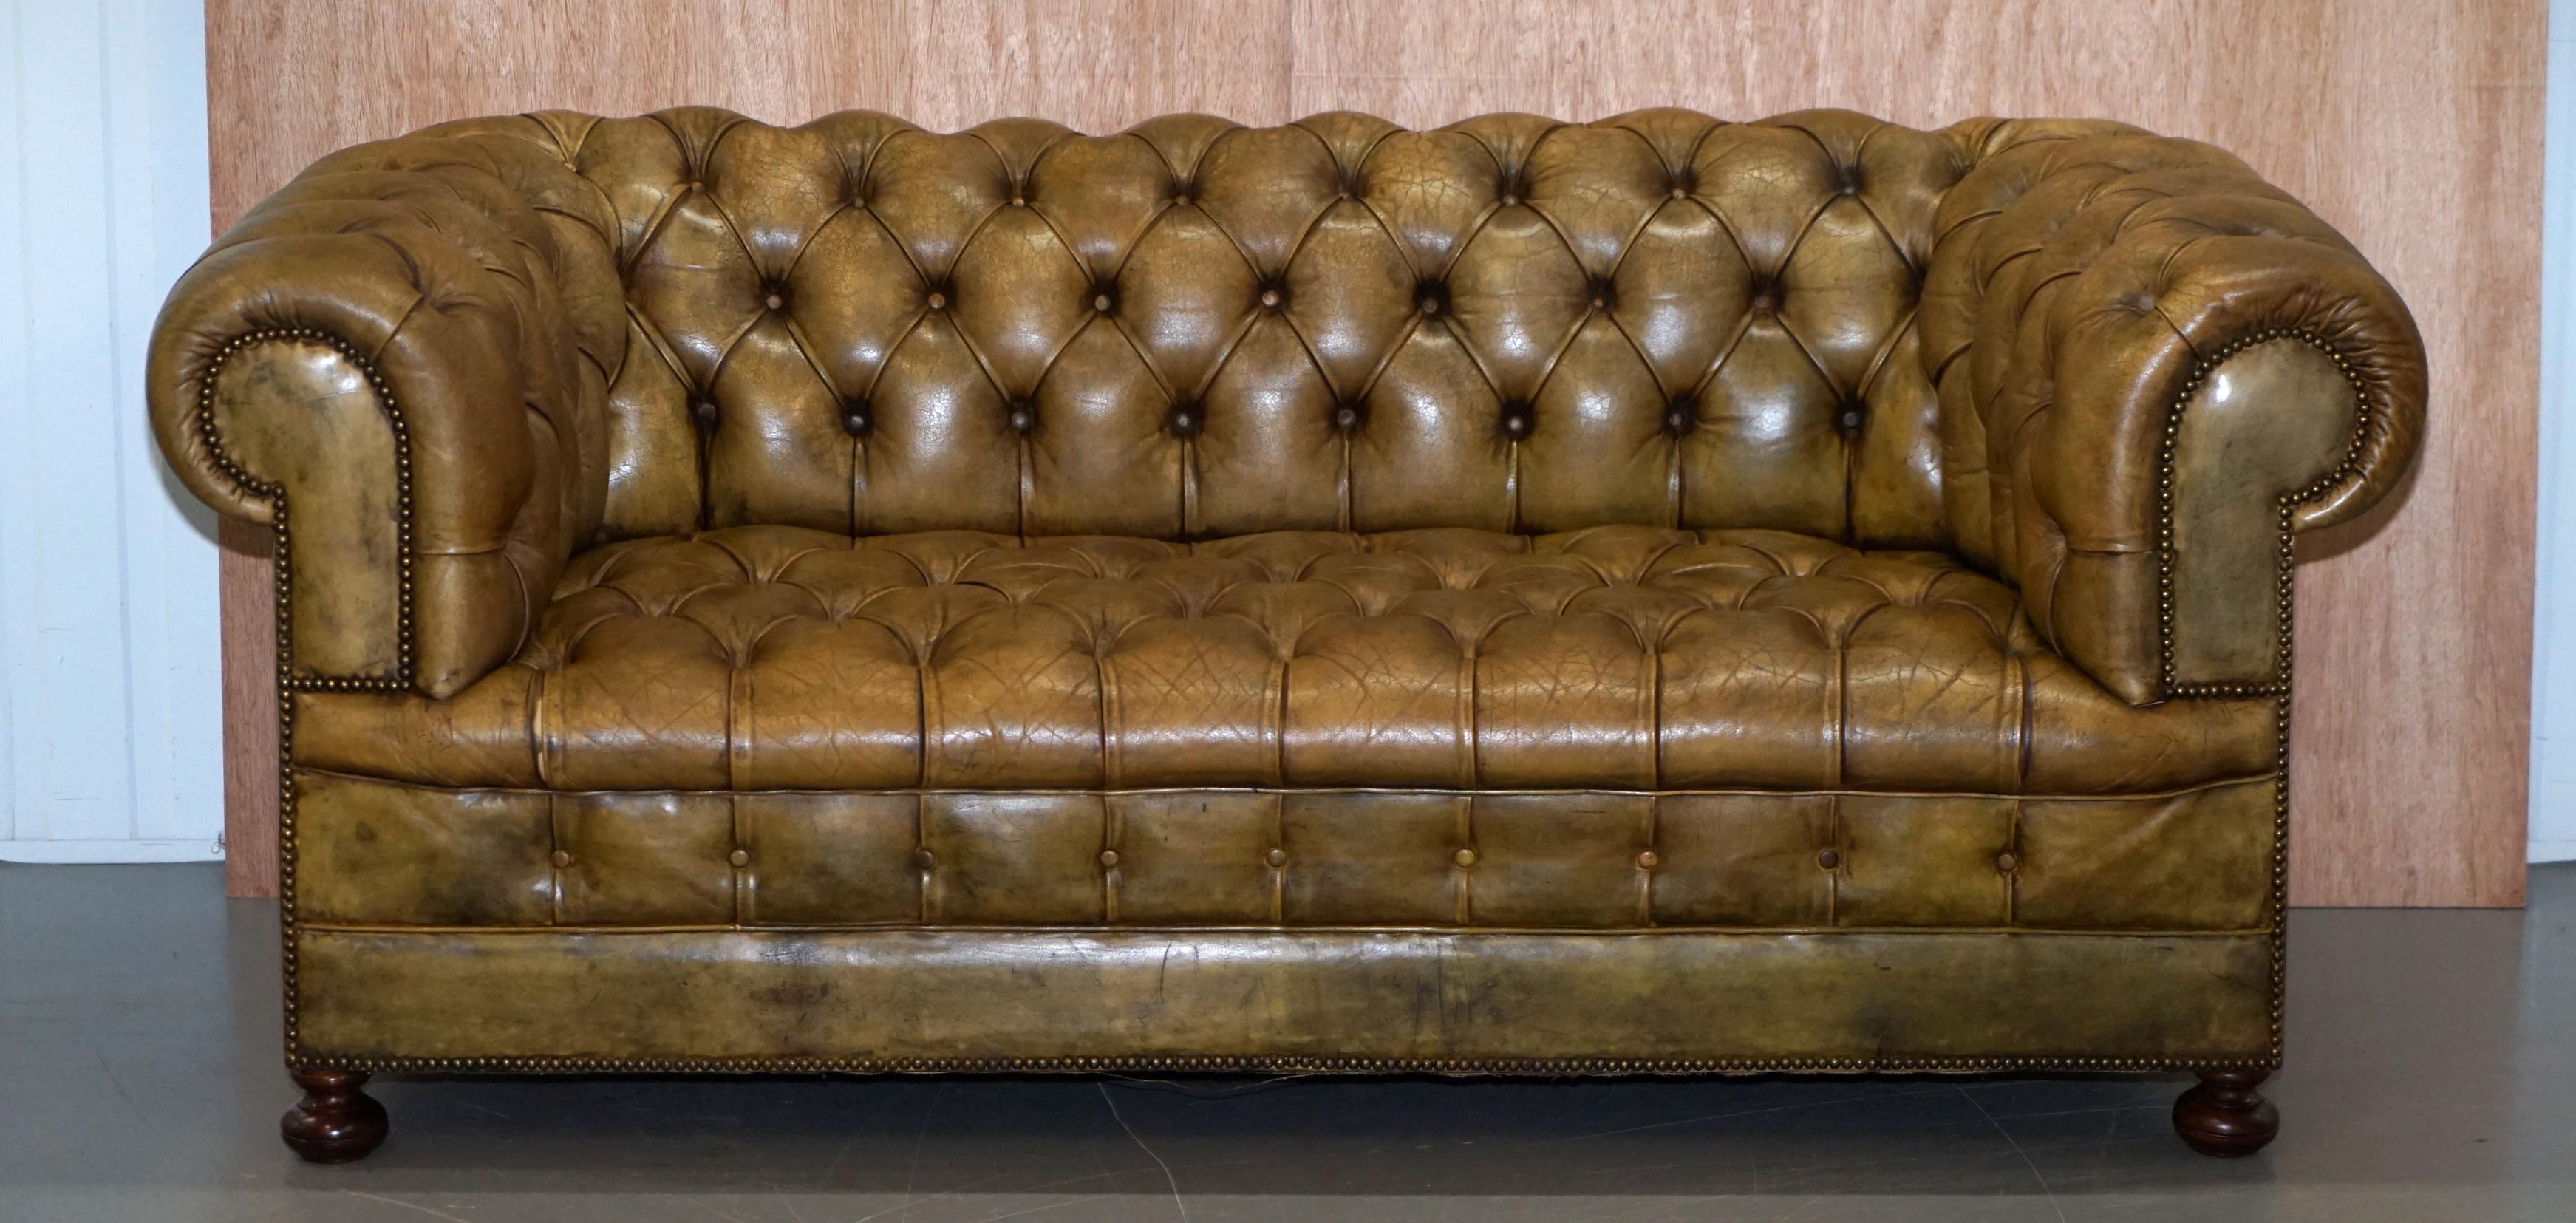 Nous sommes ravis d'offrir à la vente cet original canapé Victorien Chesterfield en cuir vert teint à la main, rempli de crin de cheval et entièrement boutonné

Un canapé très beau et bien fait, la tapisserie semble être le cuir original teint à